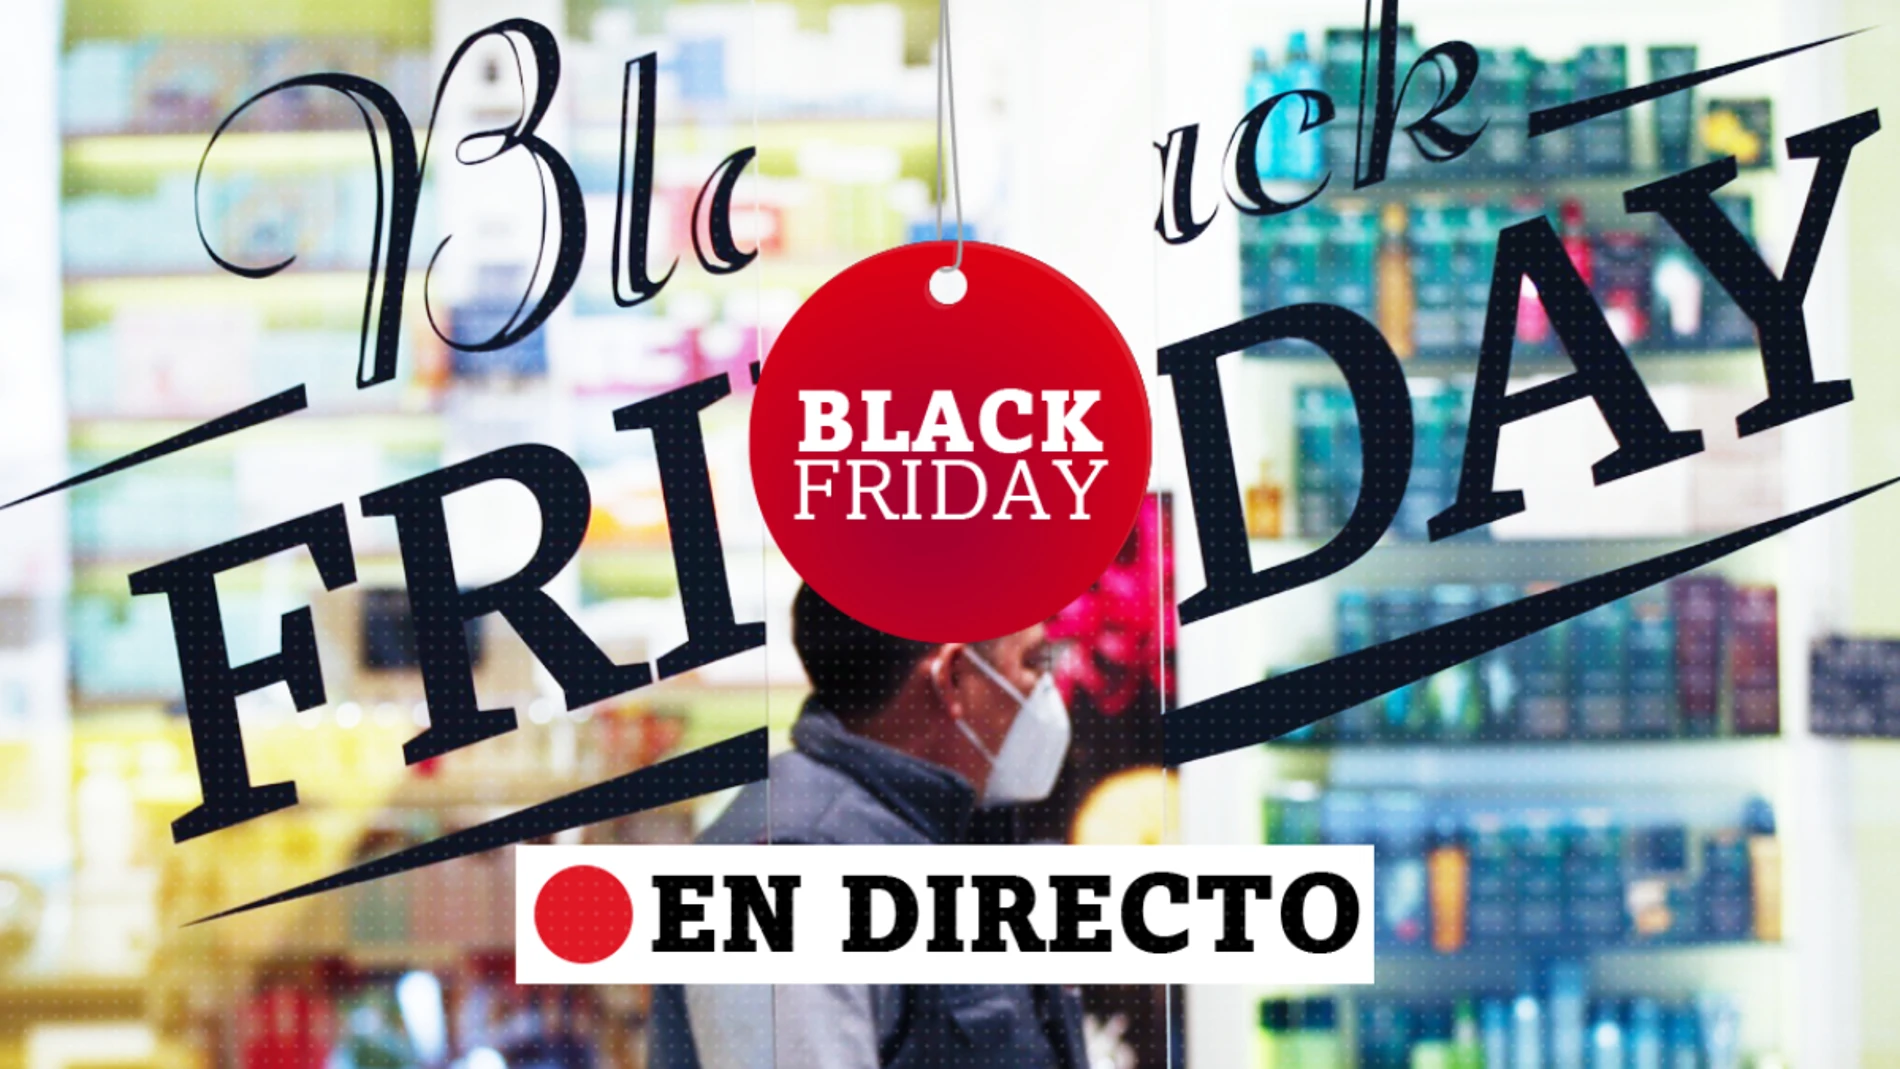 Black Friday 2019: Mejores ofertas en packs de Series, Cine y Películas